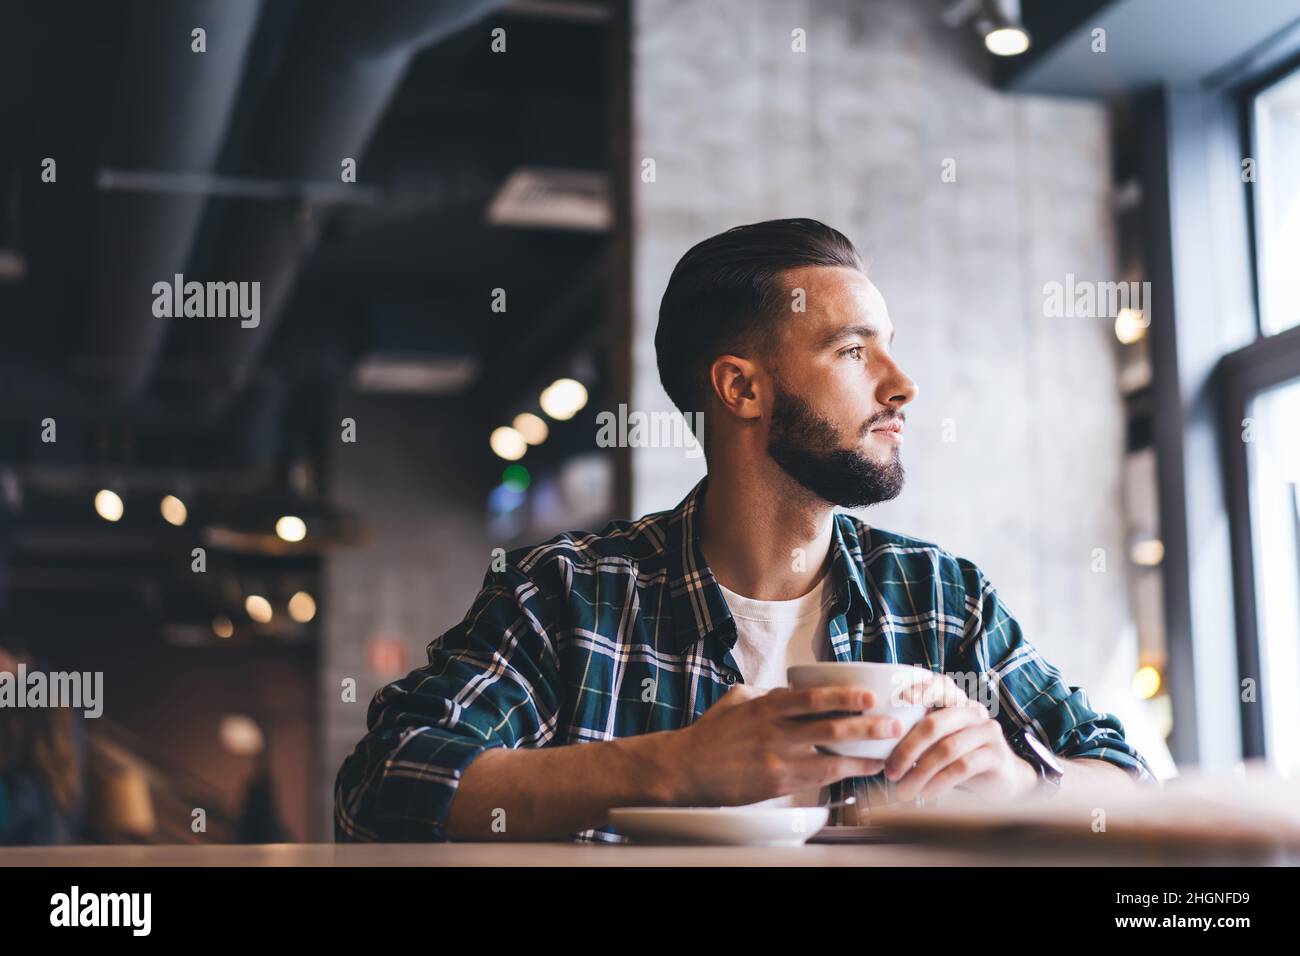 un homme attentionné vêtu d'une chemise tendance qui donne sur l'extérieur pendant l'heure du café dans la région Banque D'Images